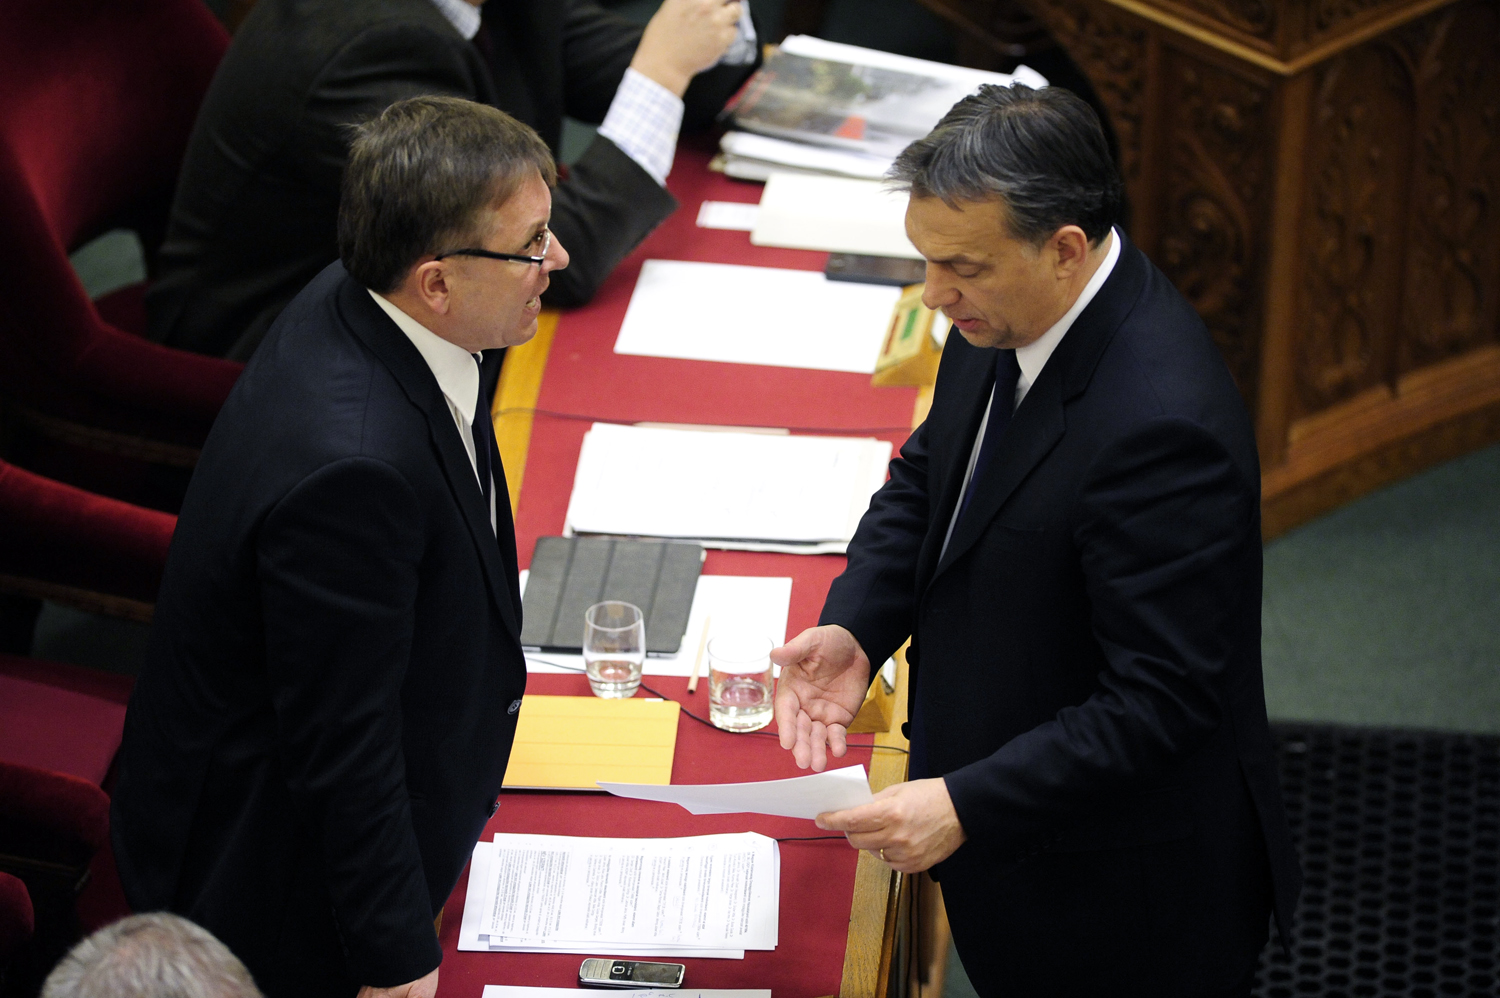 Van mit megbeszélni - Matolcsy György és Orbán Viktor a parlamentben